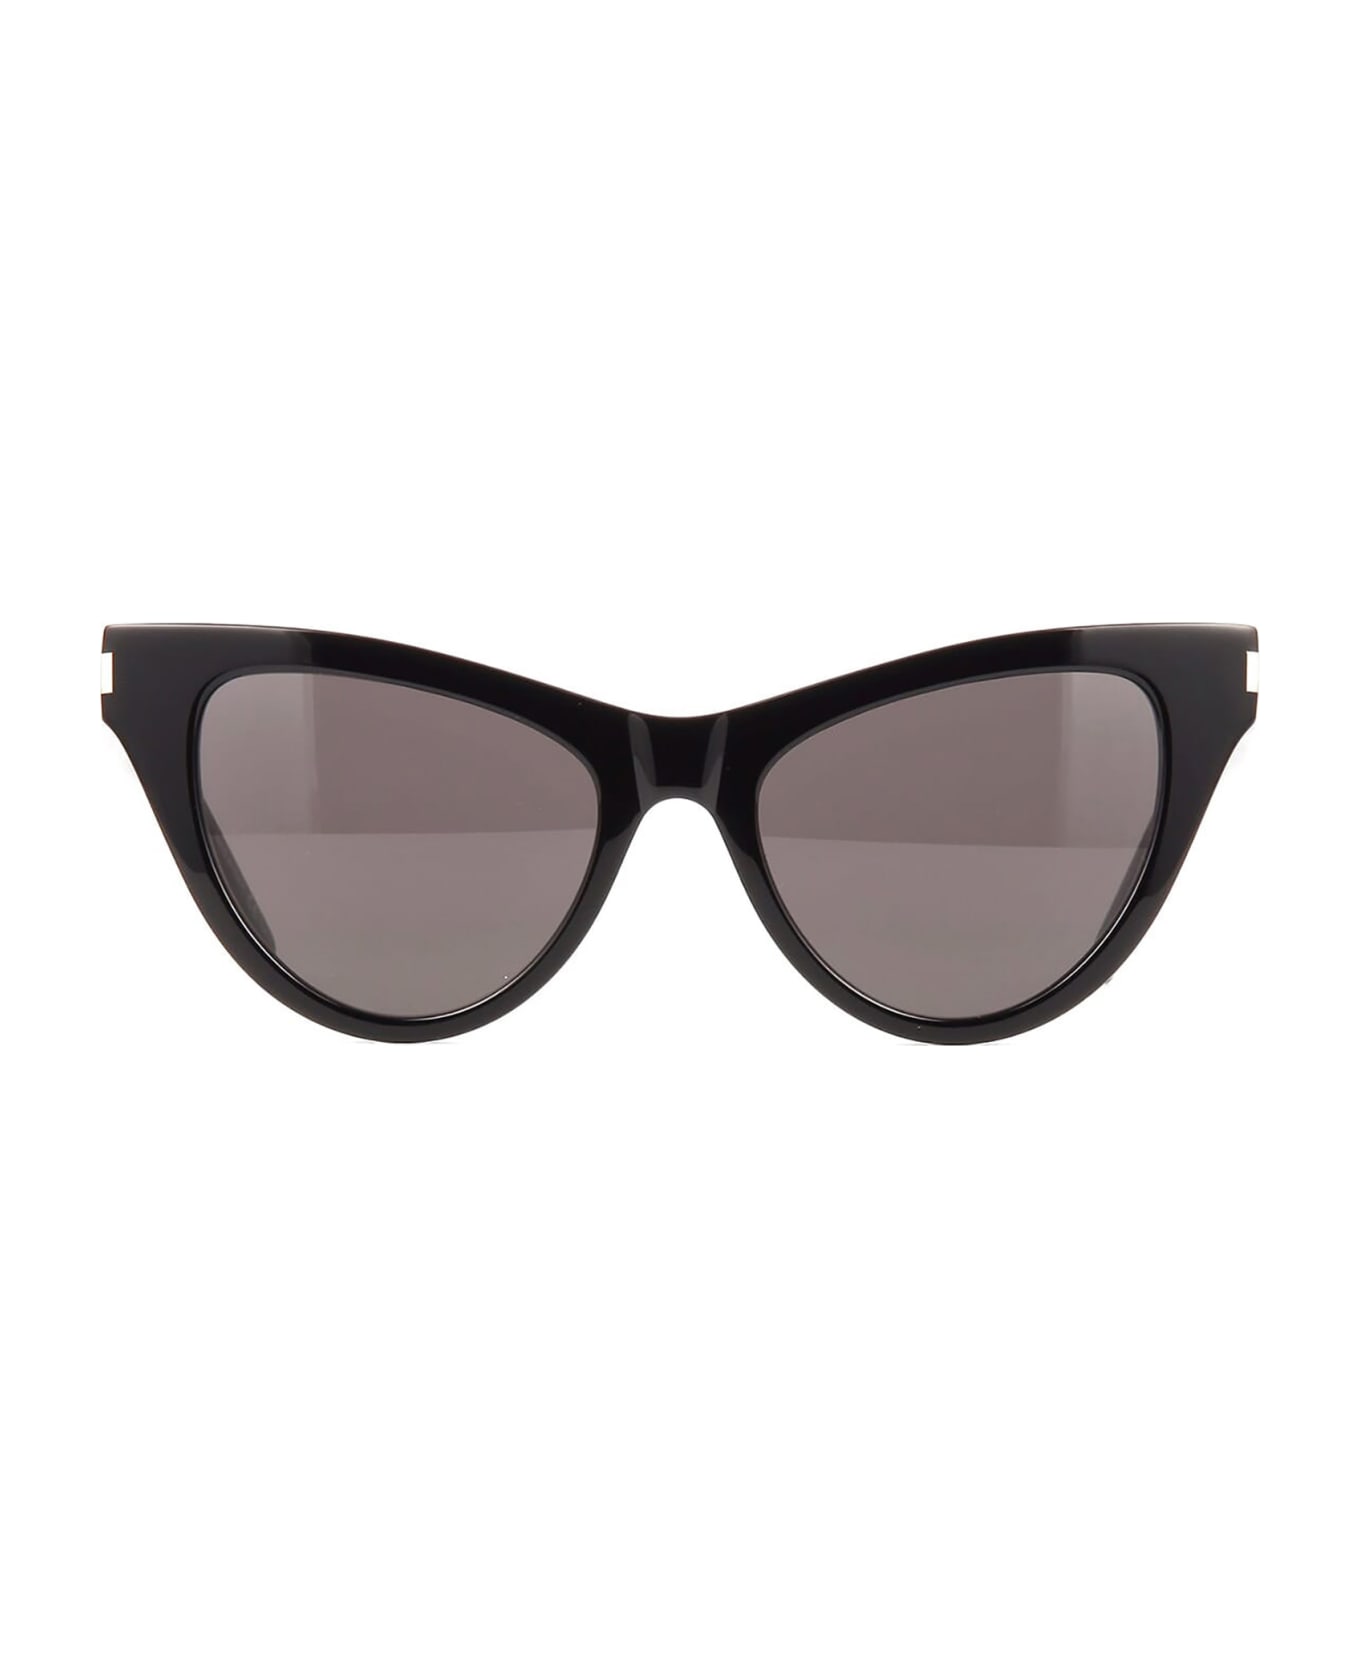 Saint Laurent Eyewear SL 425 Sunglasses - Black Black Black